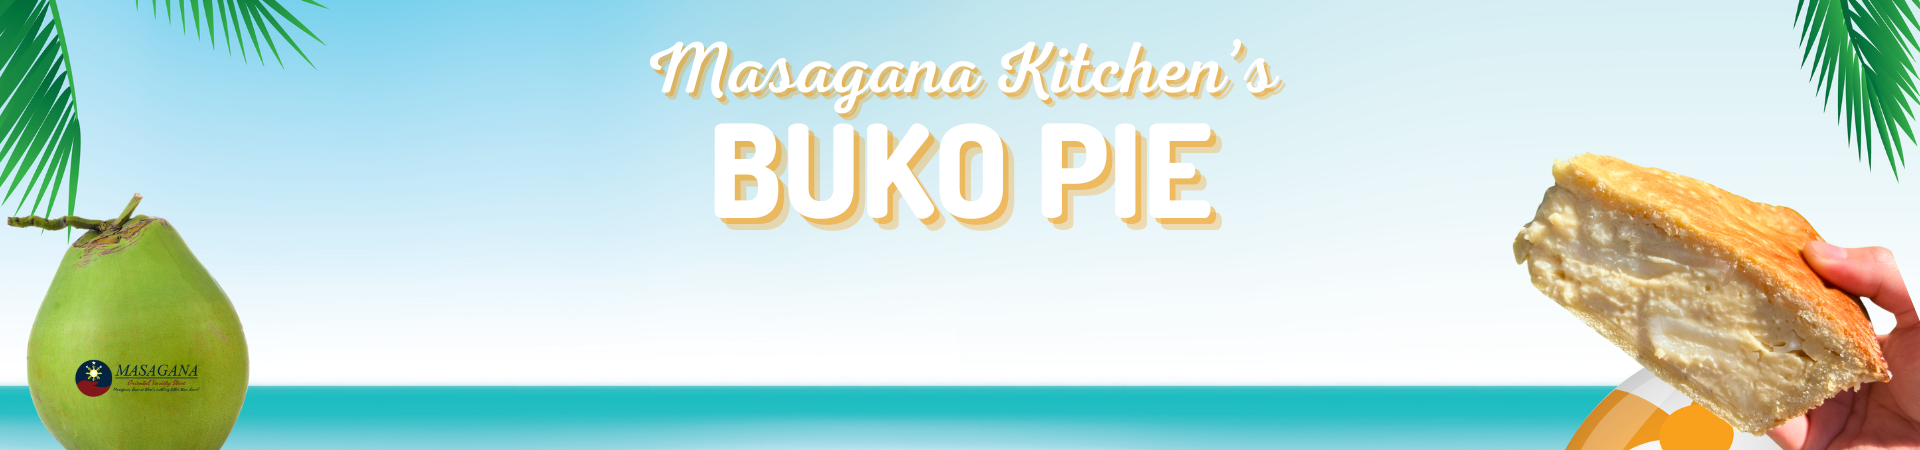 Wide Buko Pie